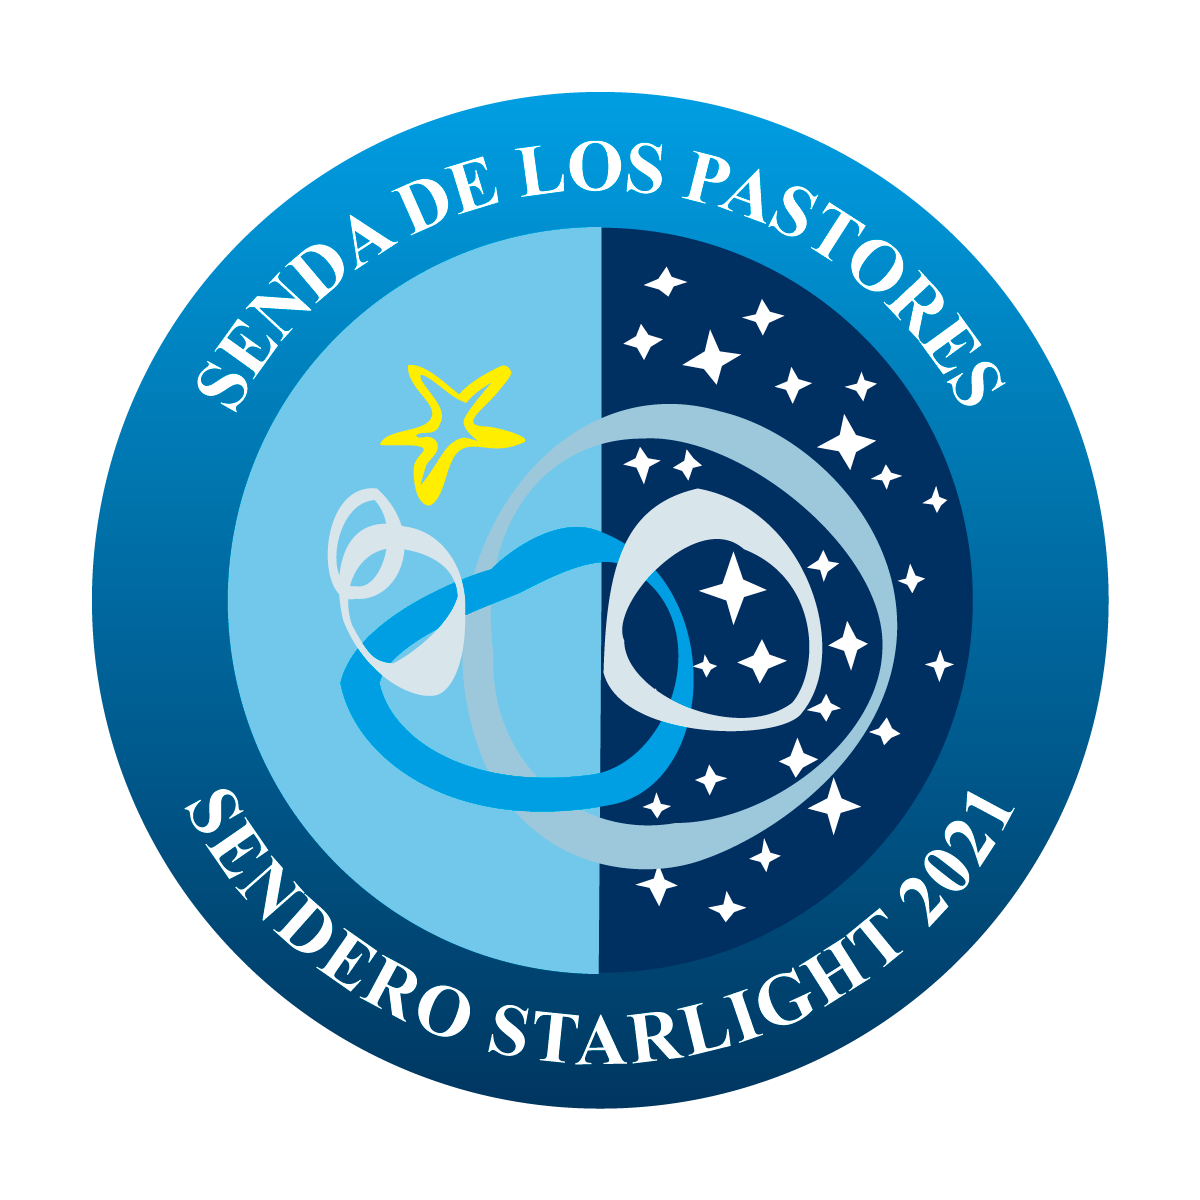 IMAGEN_Senda_de_los_Pastores_Sendero-Starlight-2021.png